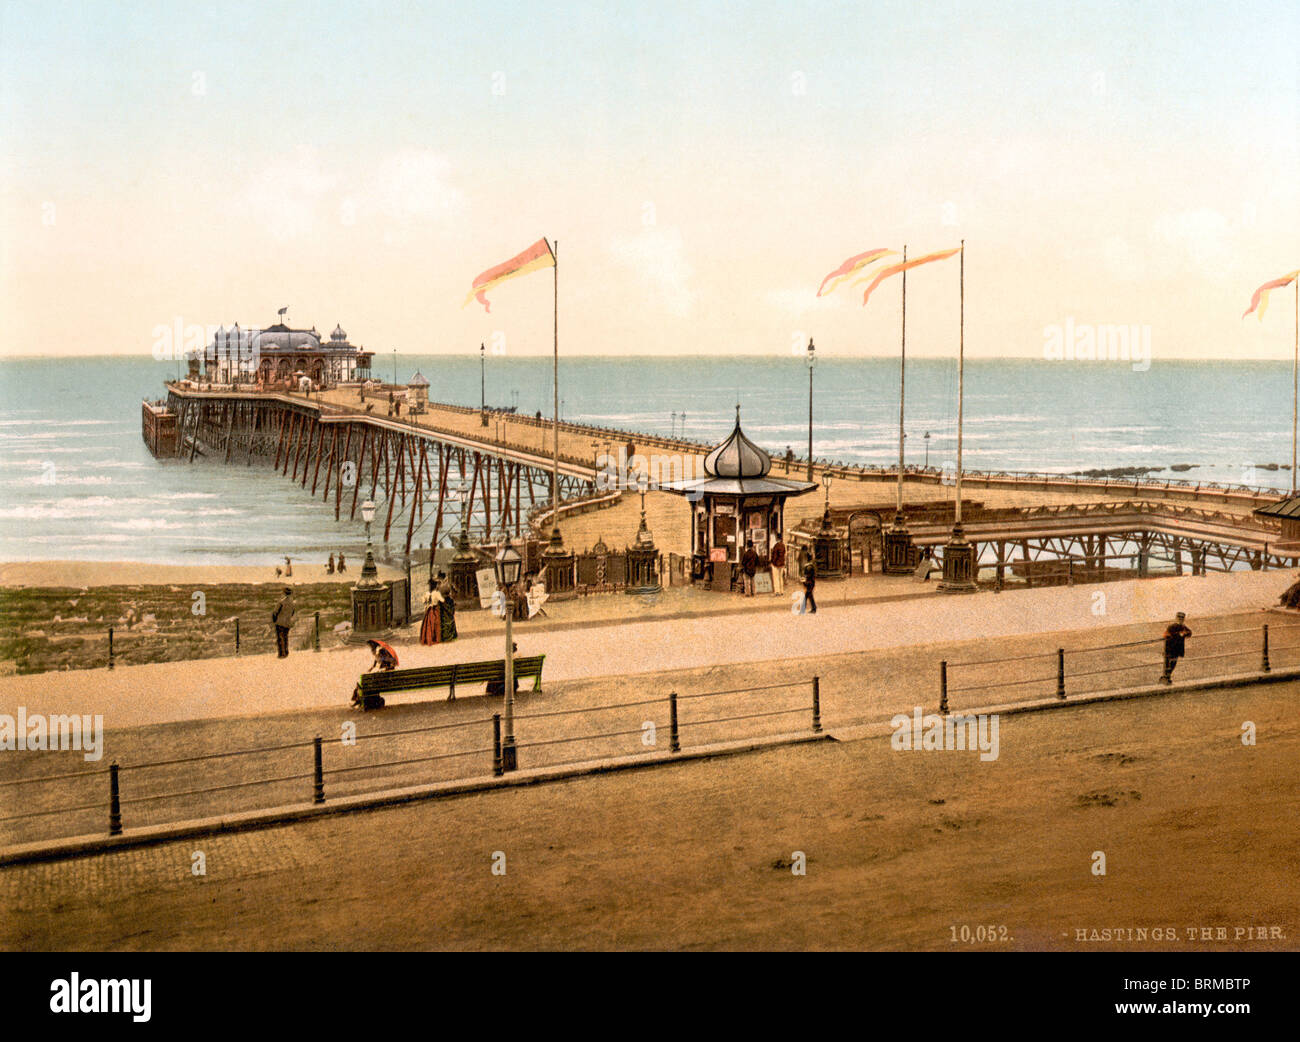 Historischen Photochrome Farbe drucken um 1894-1900 von Hastings Pier in East Sussex, England. Stockfoto